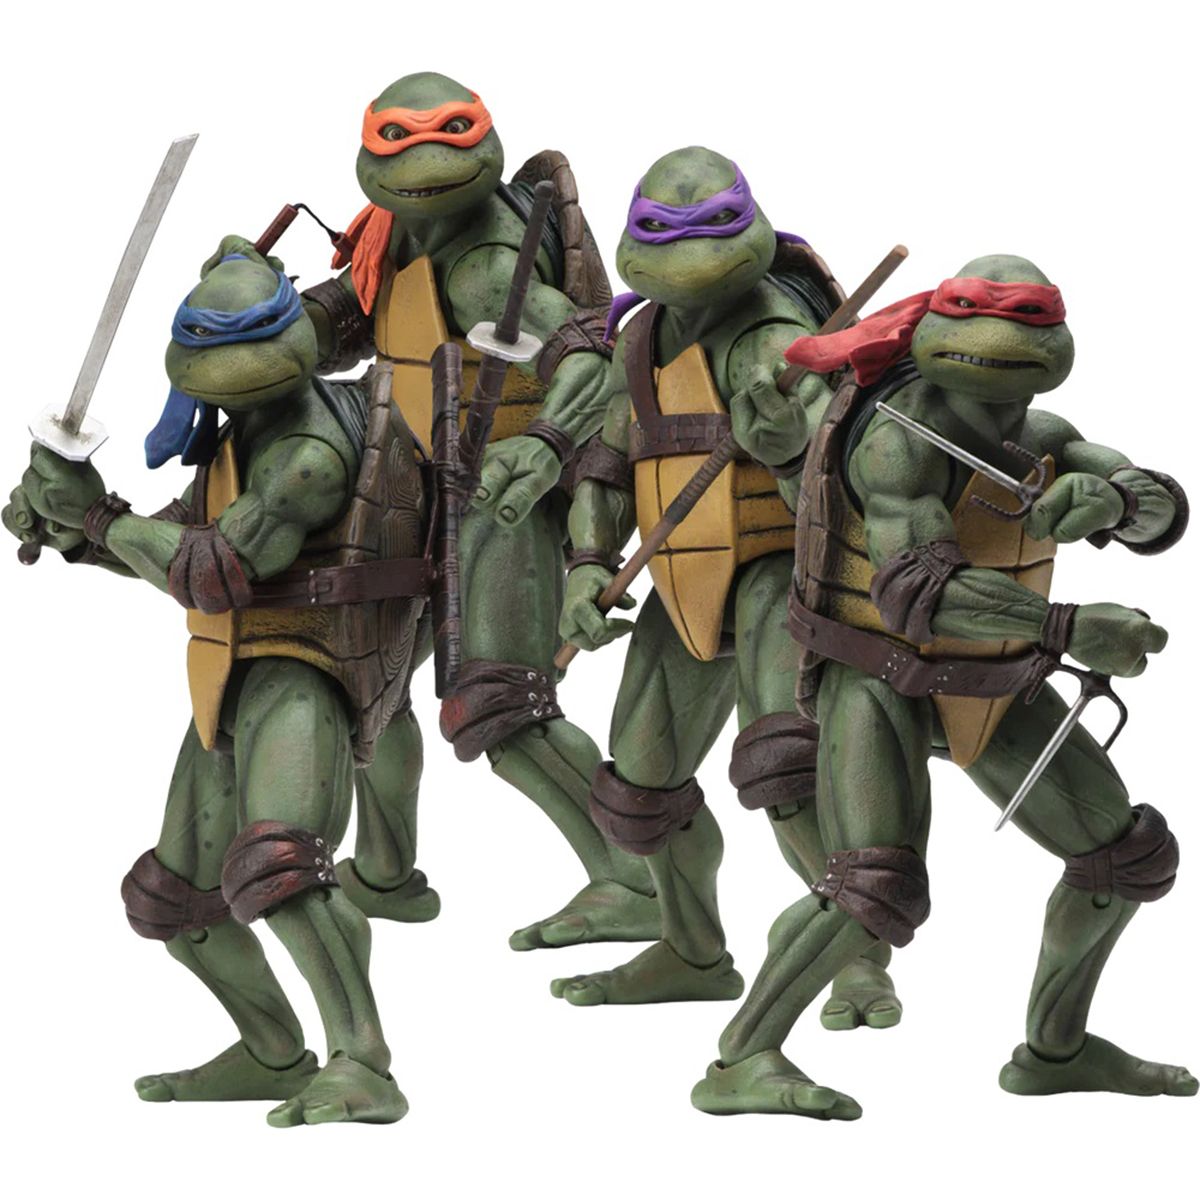 اکشن فیگور نکا مدل لاکپشت های نینجا طرح Turtle Ninja مجموعه 4 عددی -  - 1